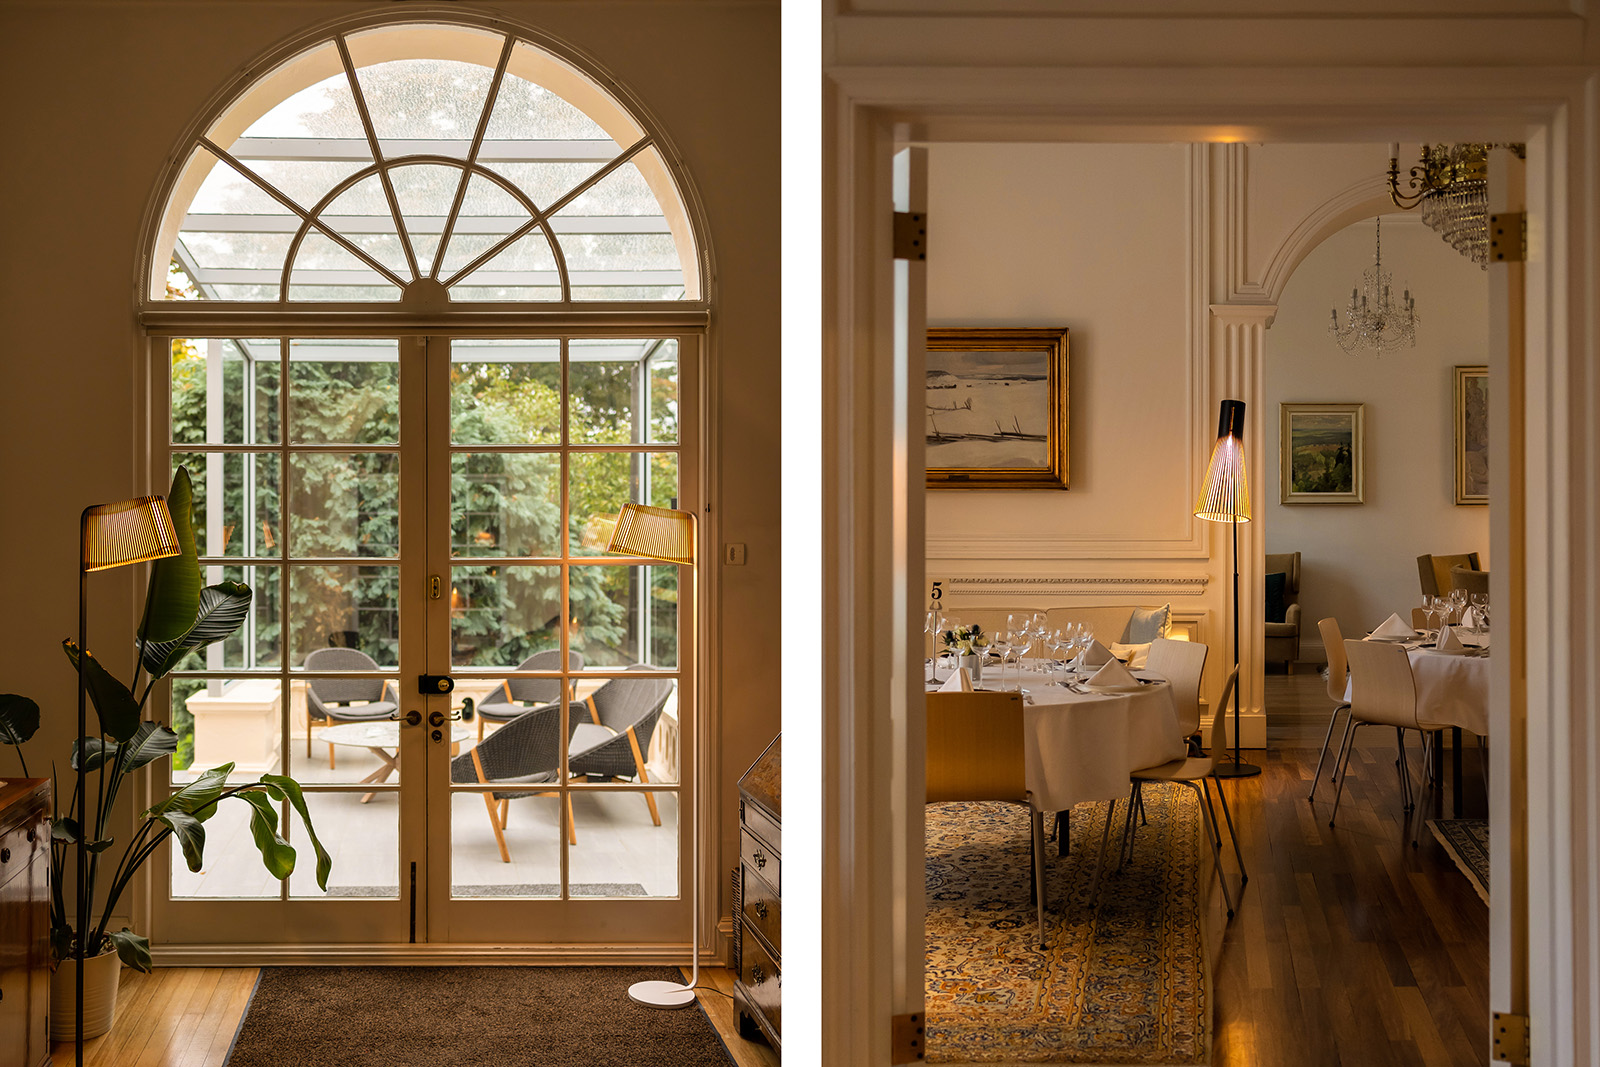 Two floor lamps beside a garden door. Dining room view through an open door.